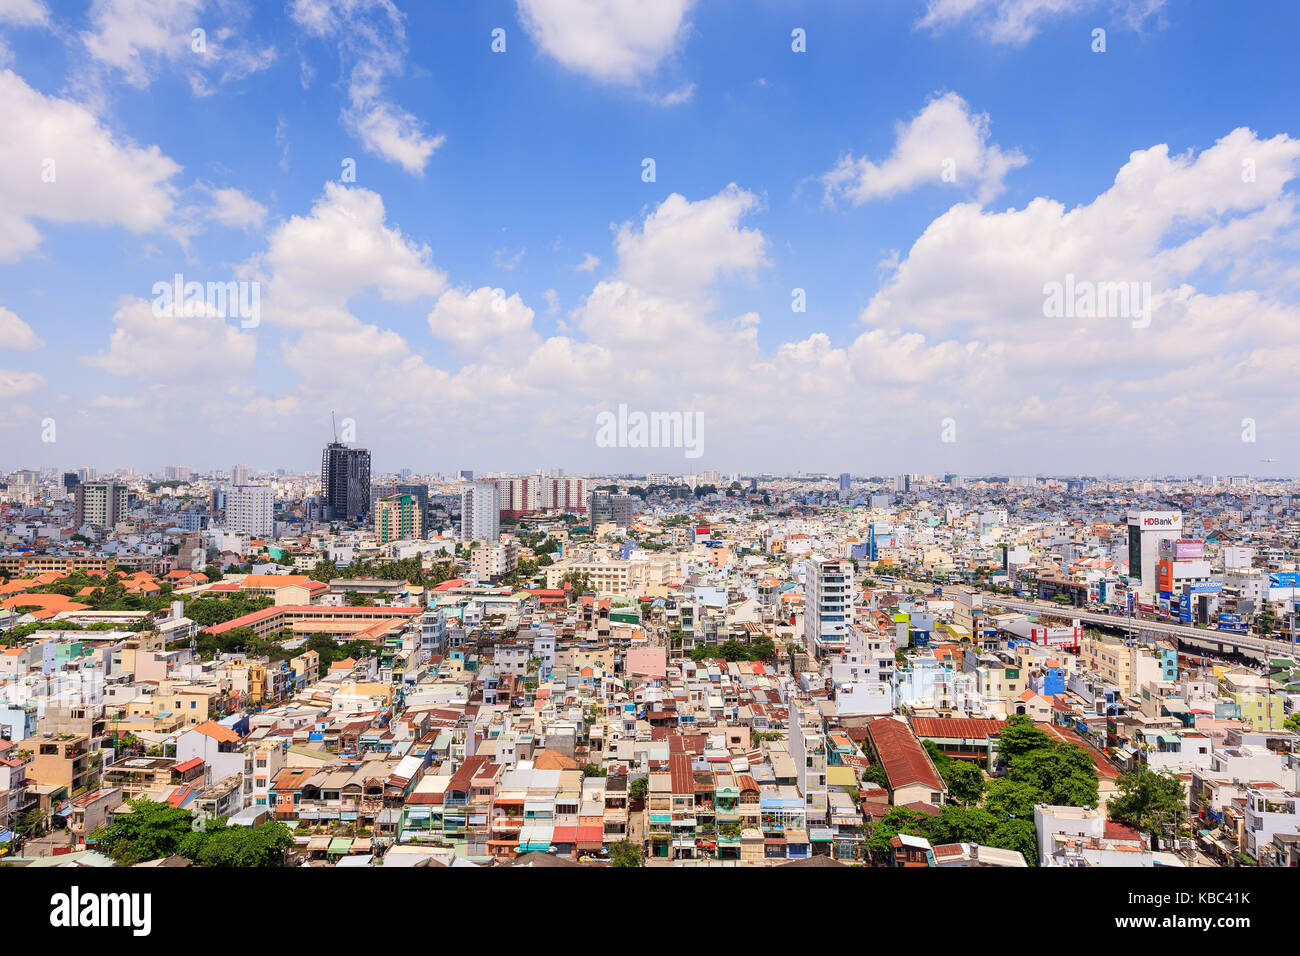 Vue panoramique de la ville de Ho chi minh (Saigon), Vietnam ou. Ho chi minh ville est la plus grande ville et centre économique au Vietnam Banque D'Images